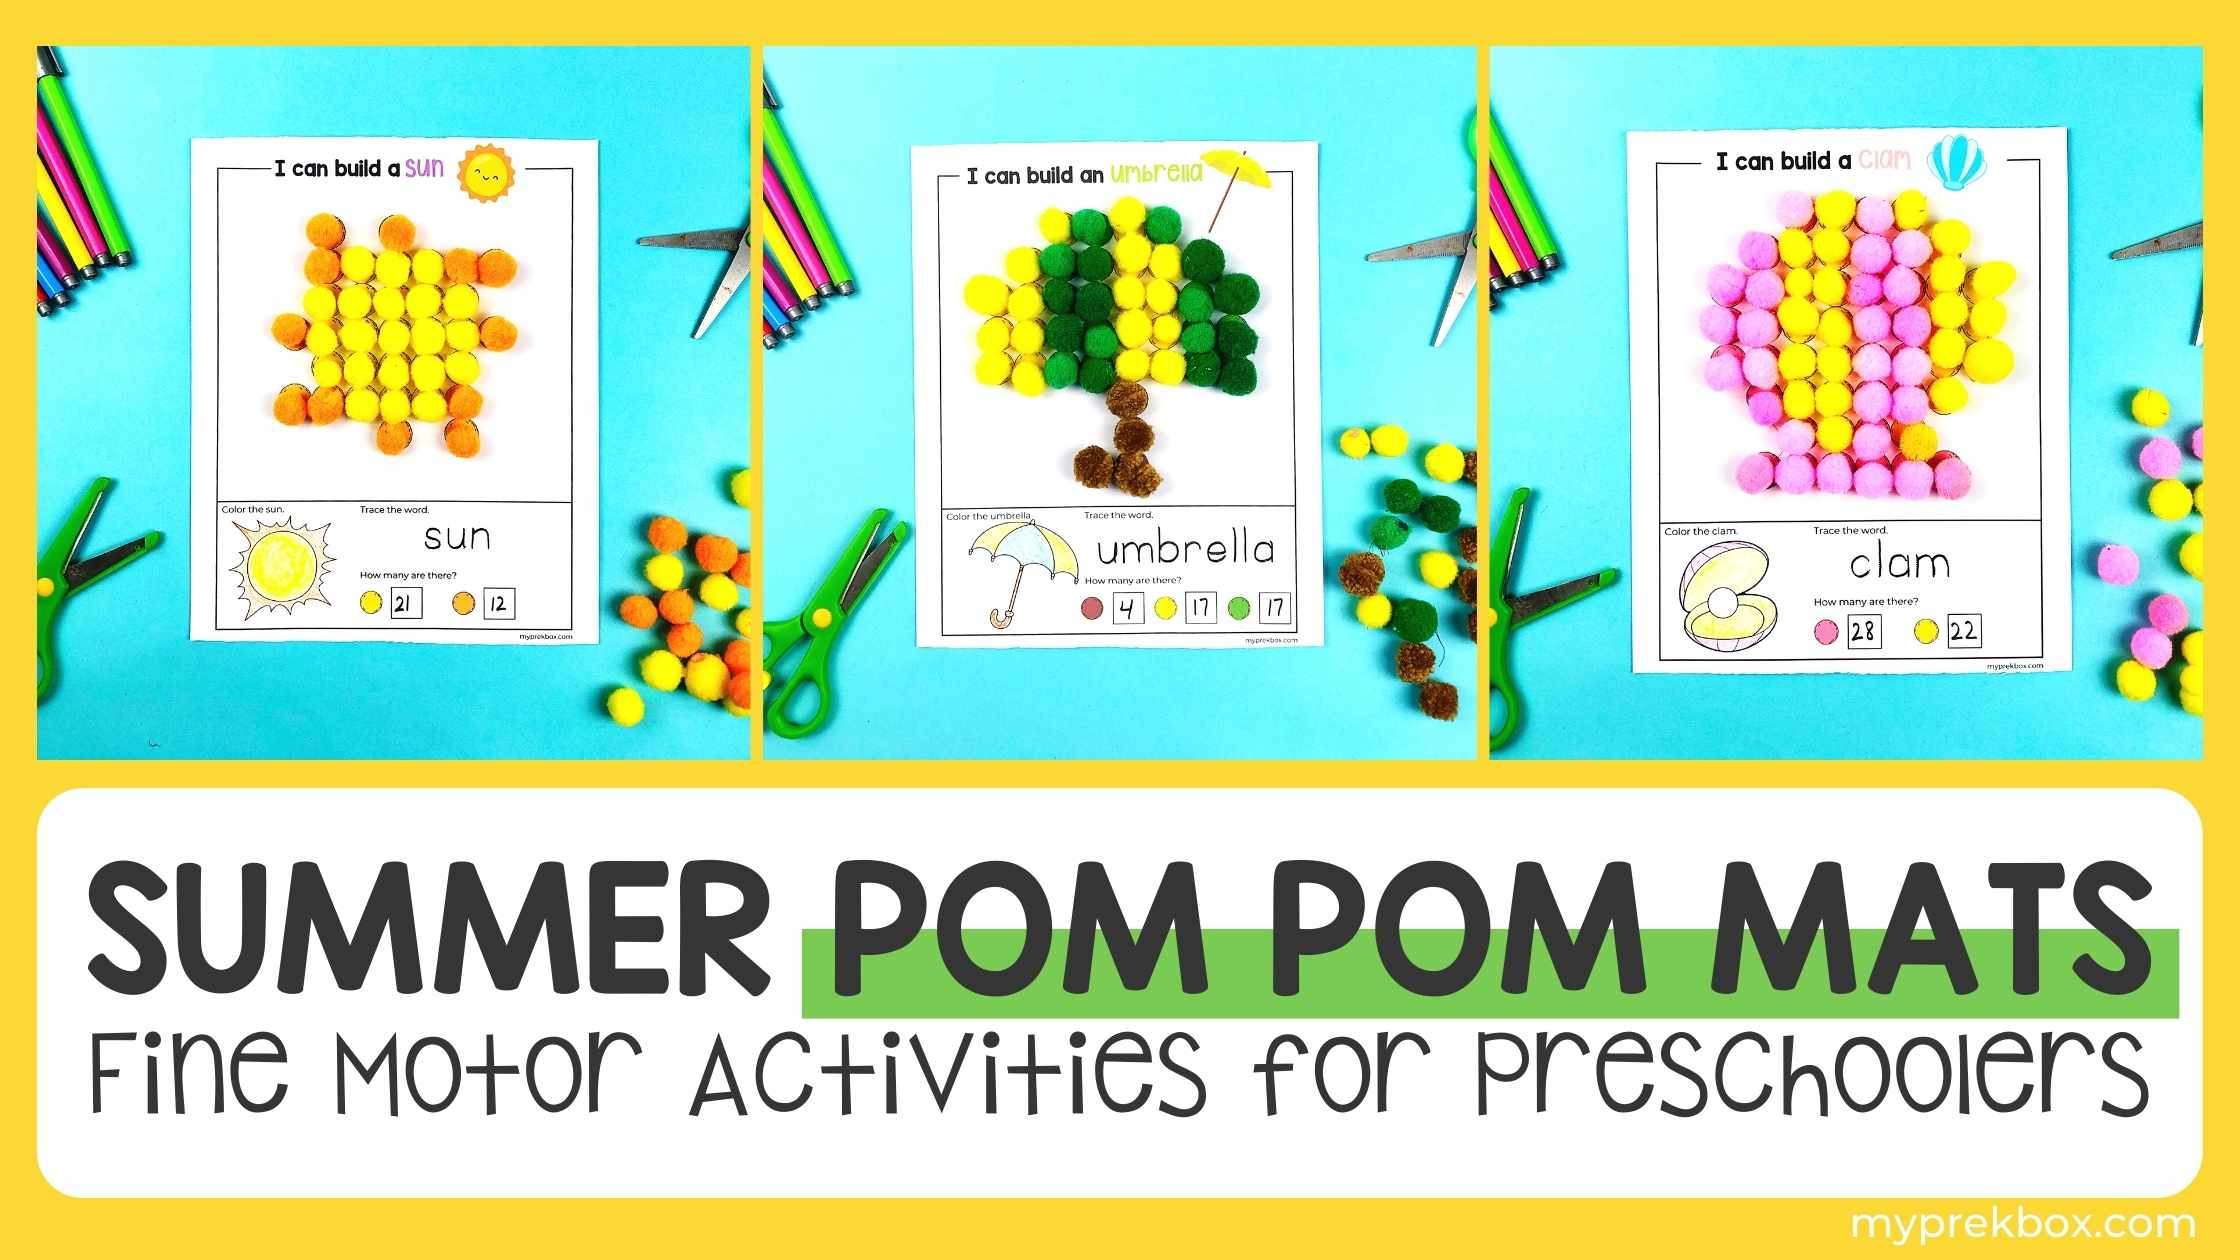 Summer Pom Pom Mats: Fine Motor Activities for Preschoolers 